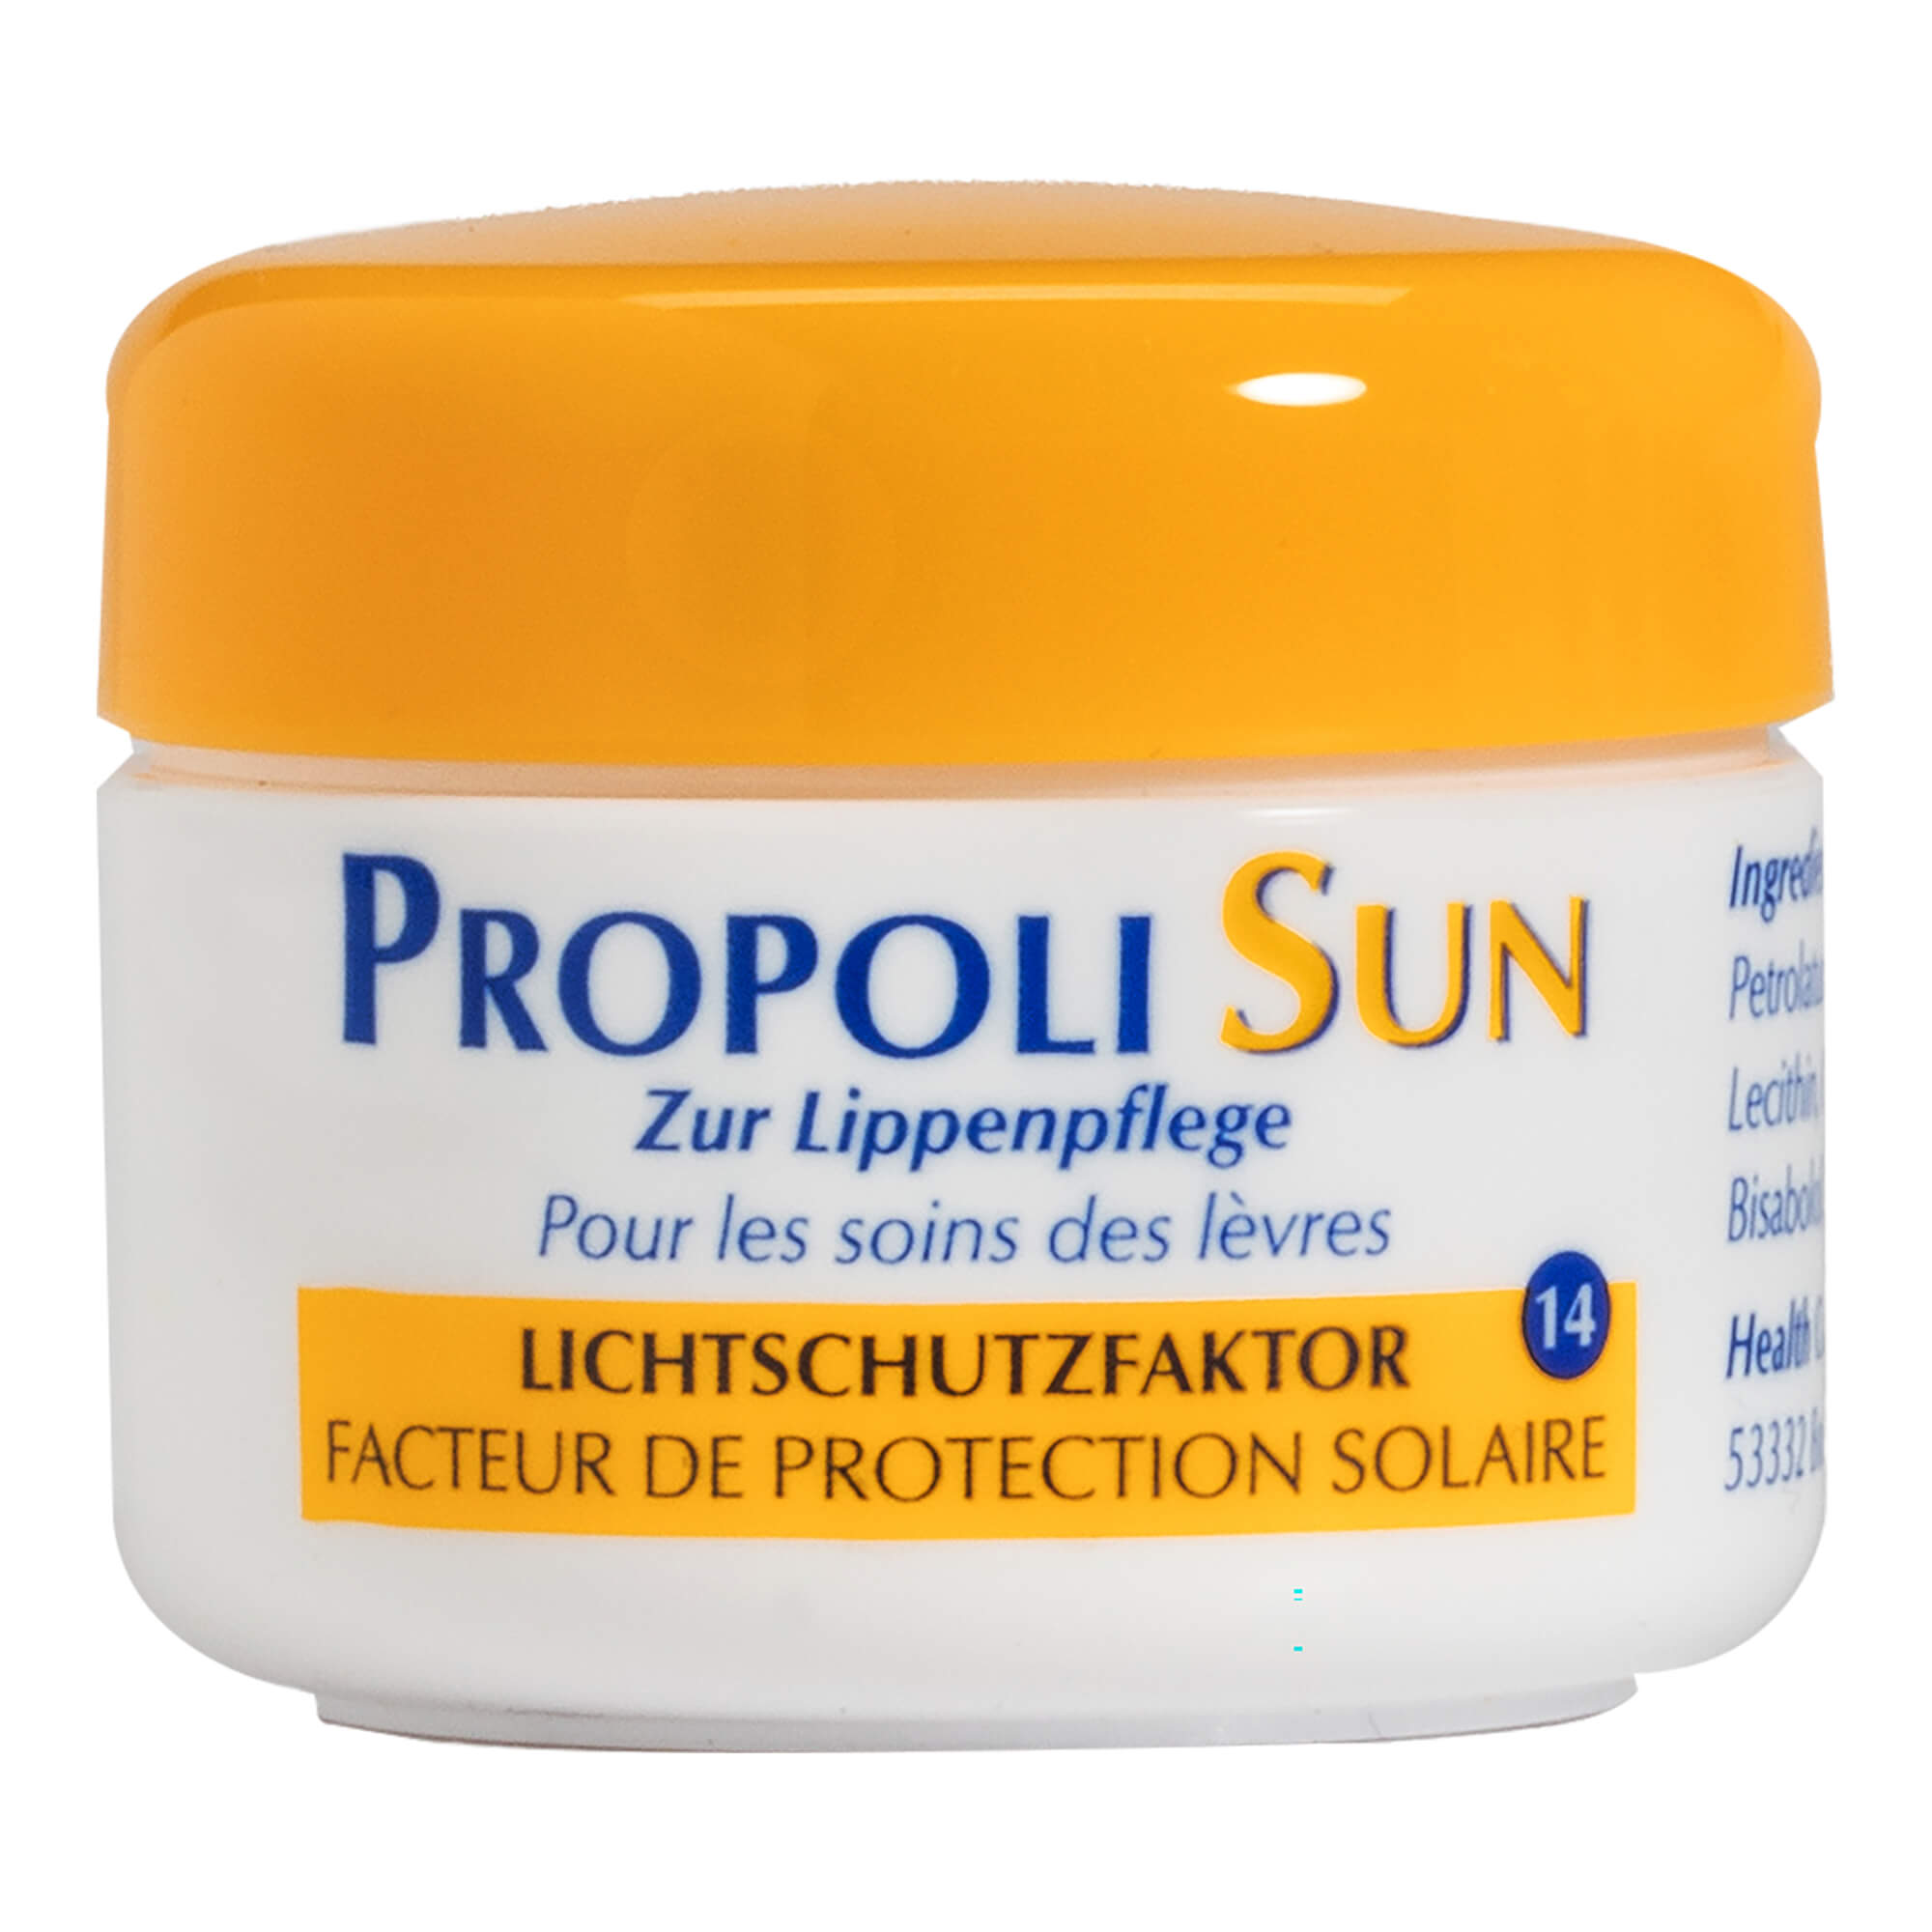 Schützt empfindsame Lippen sowie Nasen- und Ohrenpartien vor Sonnenbrand und sonnenbedingter Hautalterung.